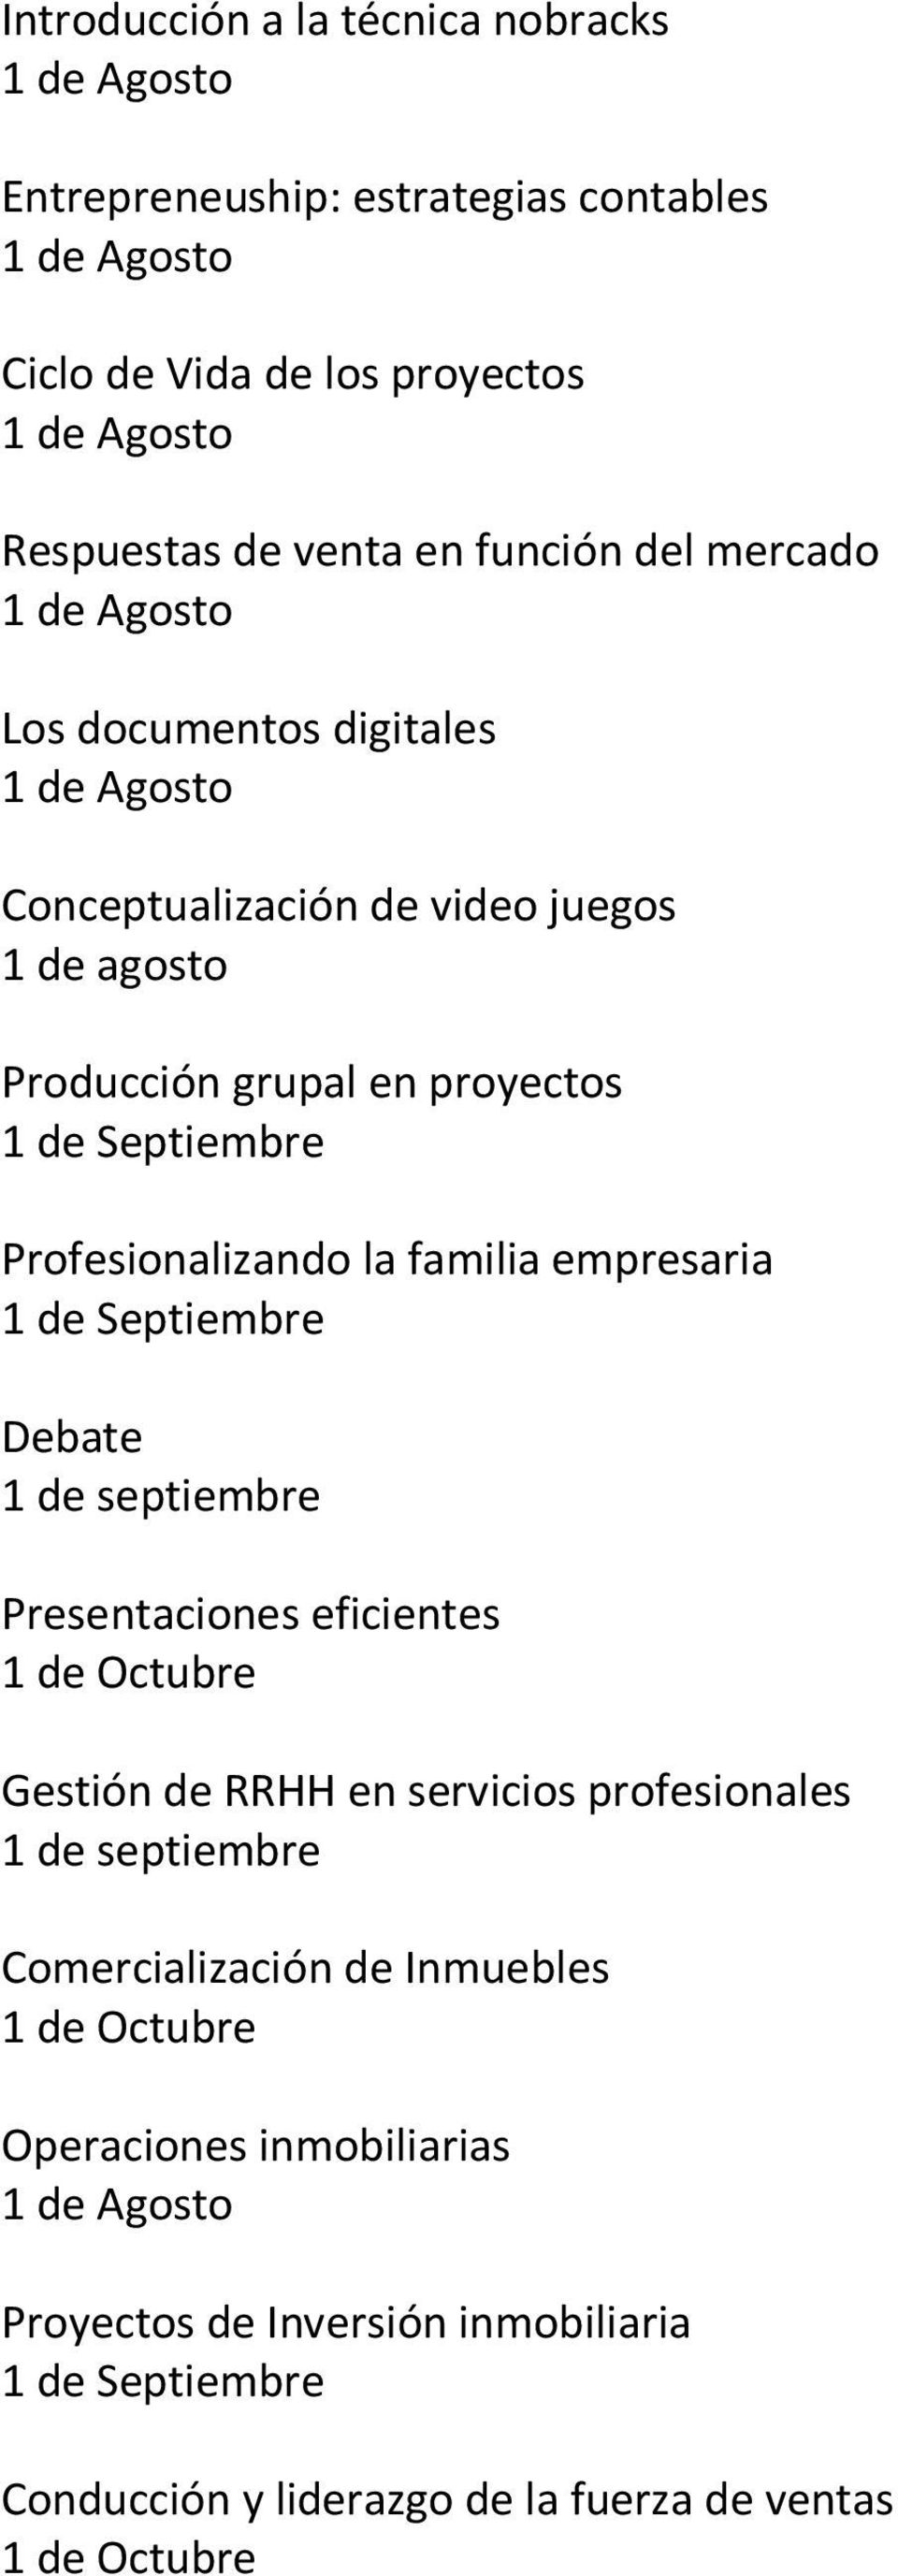 empresaria Debate 1 de septiembre Presentaciones eficientes 1 de Octubre Gestión de RRHH en servicios profesionales 1 de septiembre